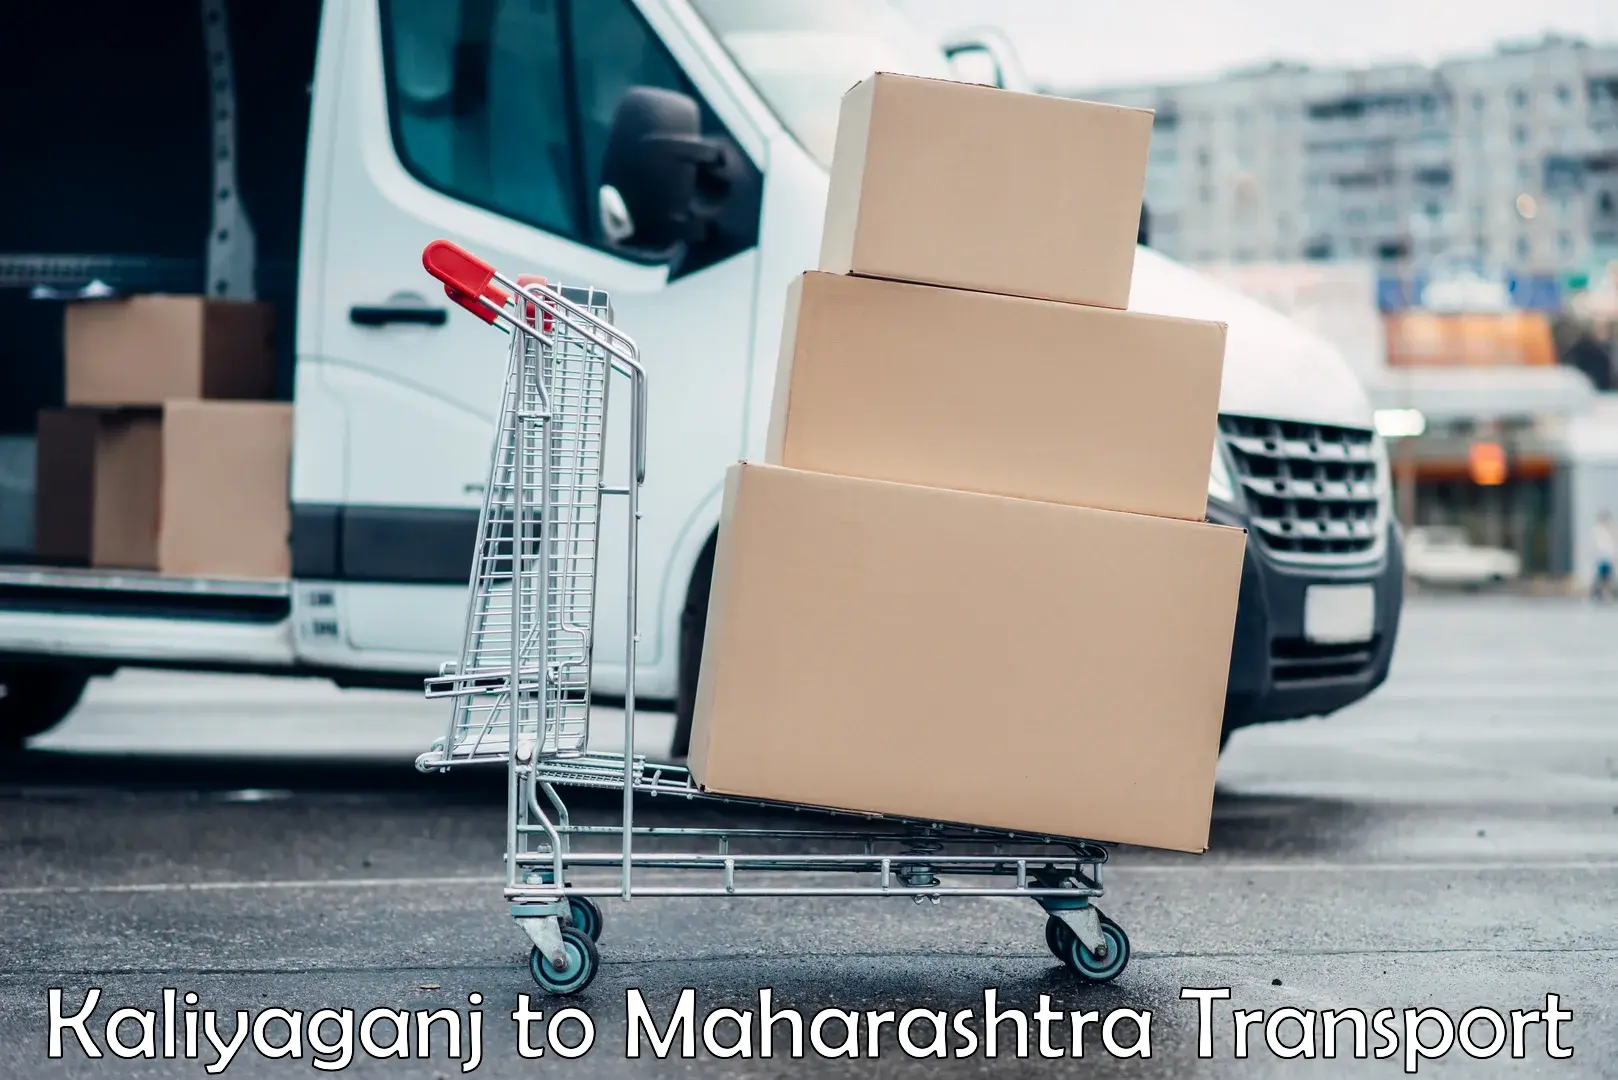 Pick up transport service Kaliyaganj to Mahur